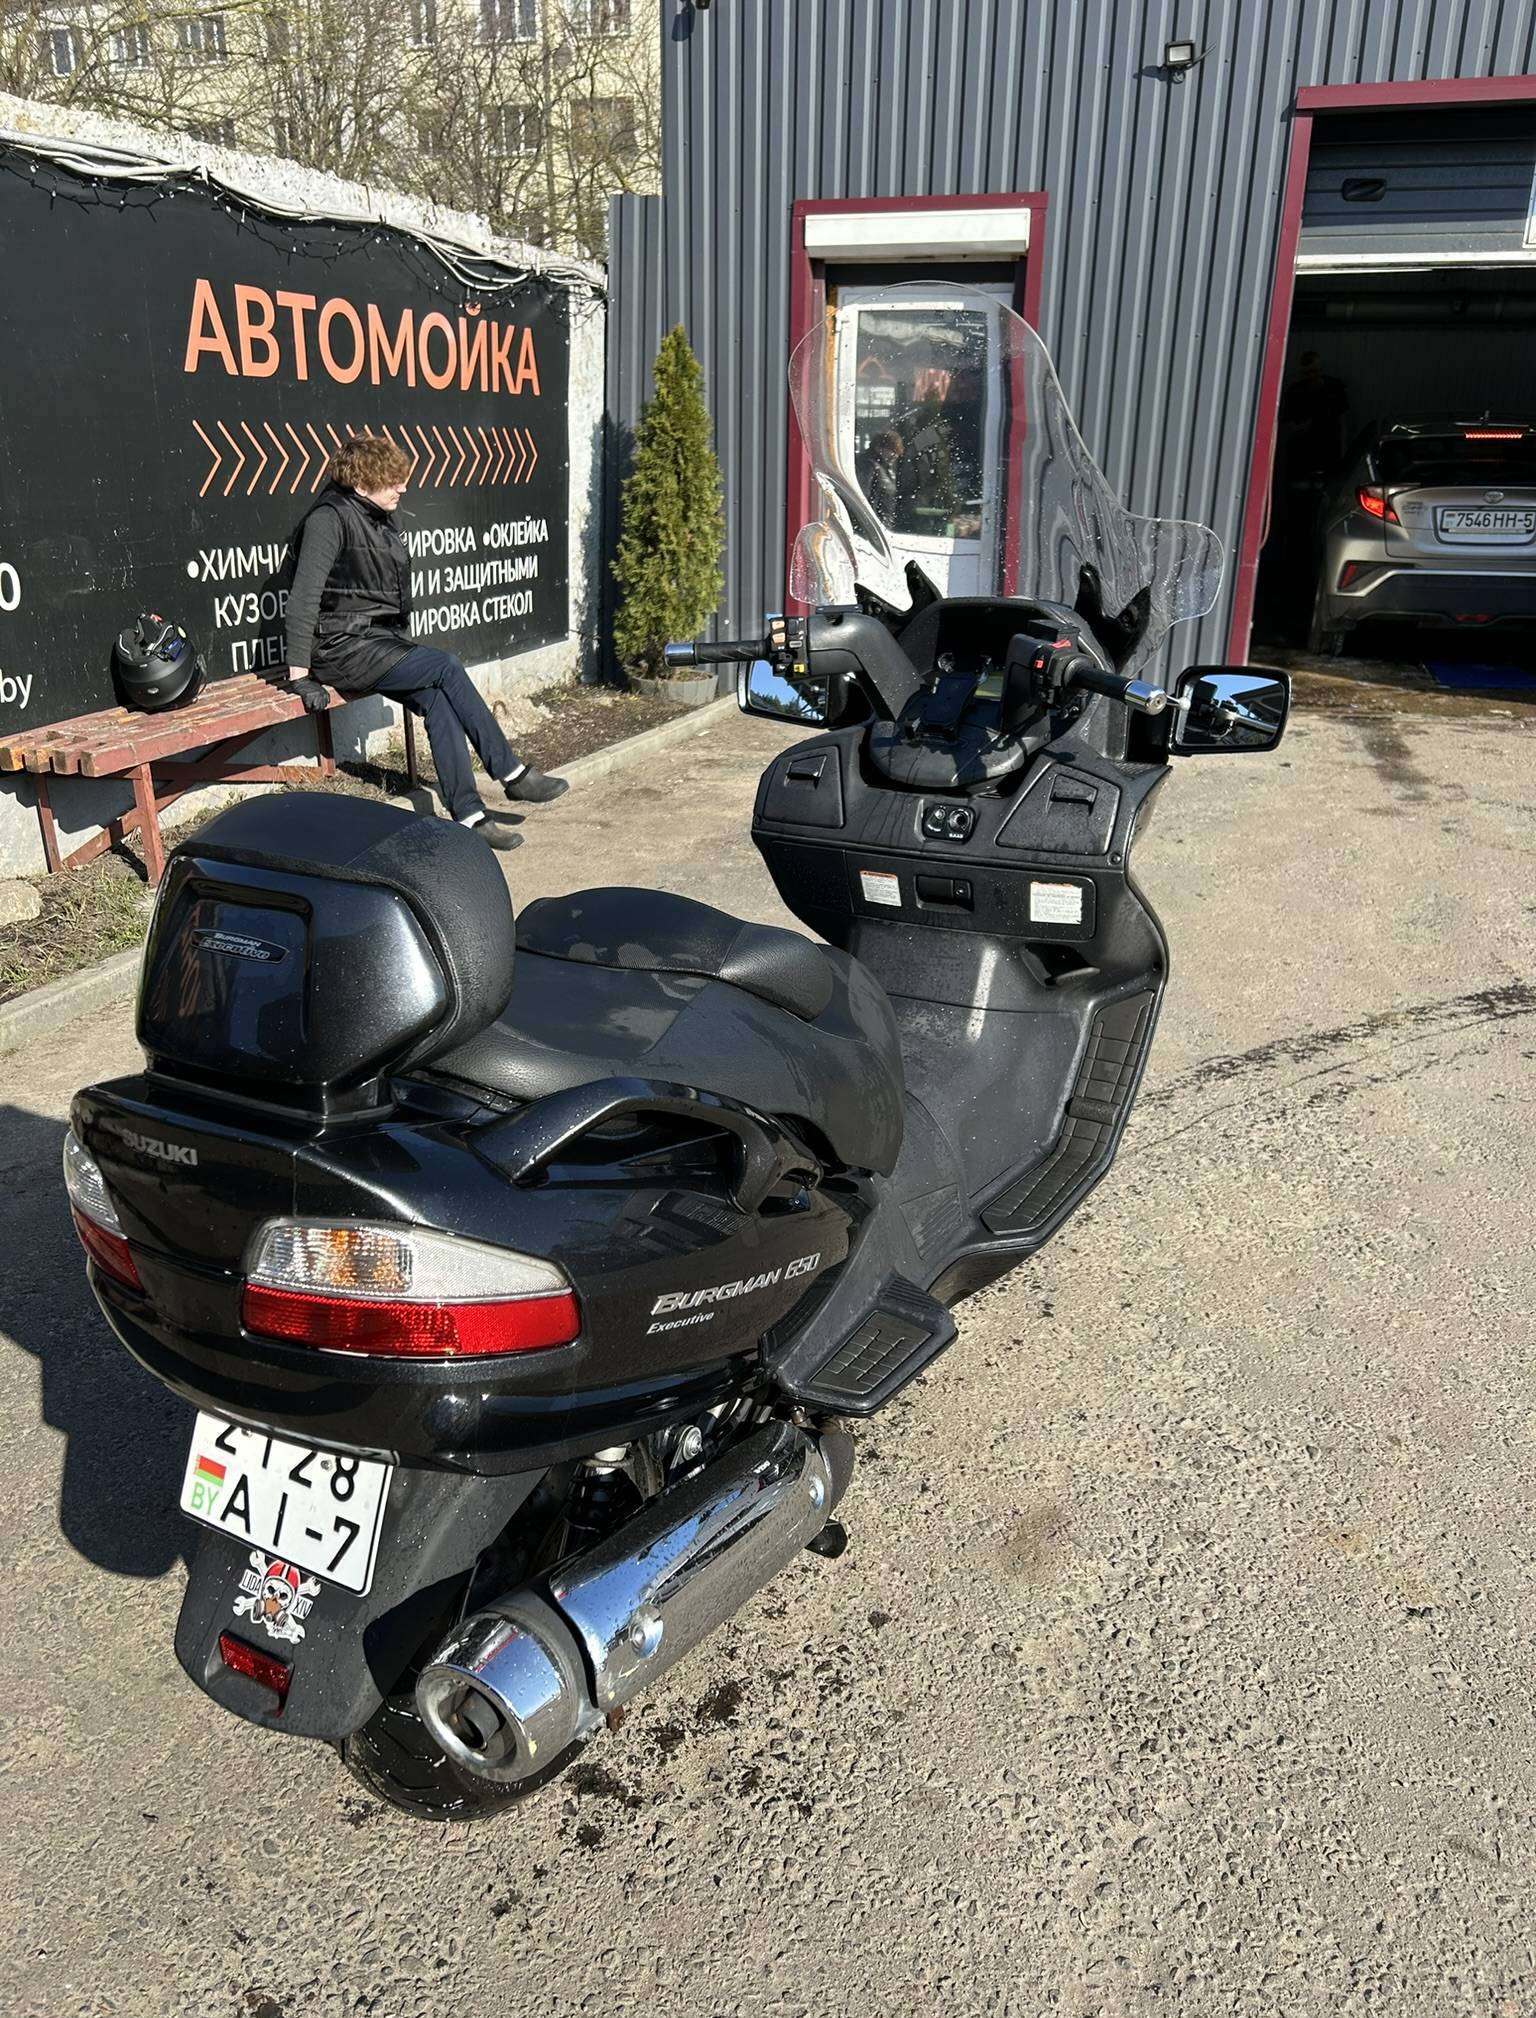 Каталог скутеров с фото и ценой в Беларуси в кредит